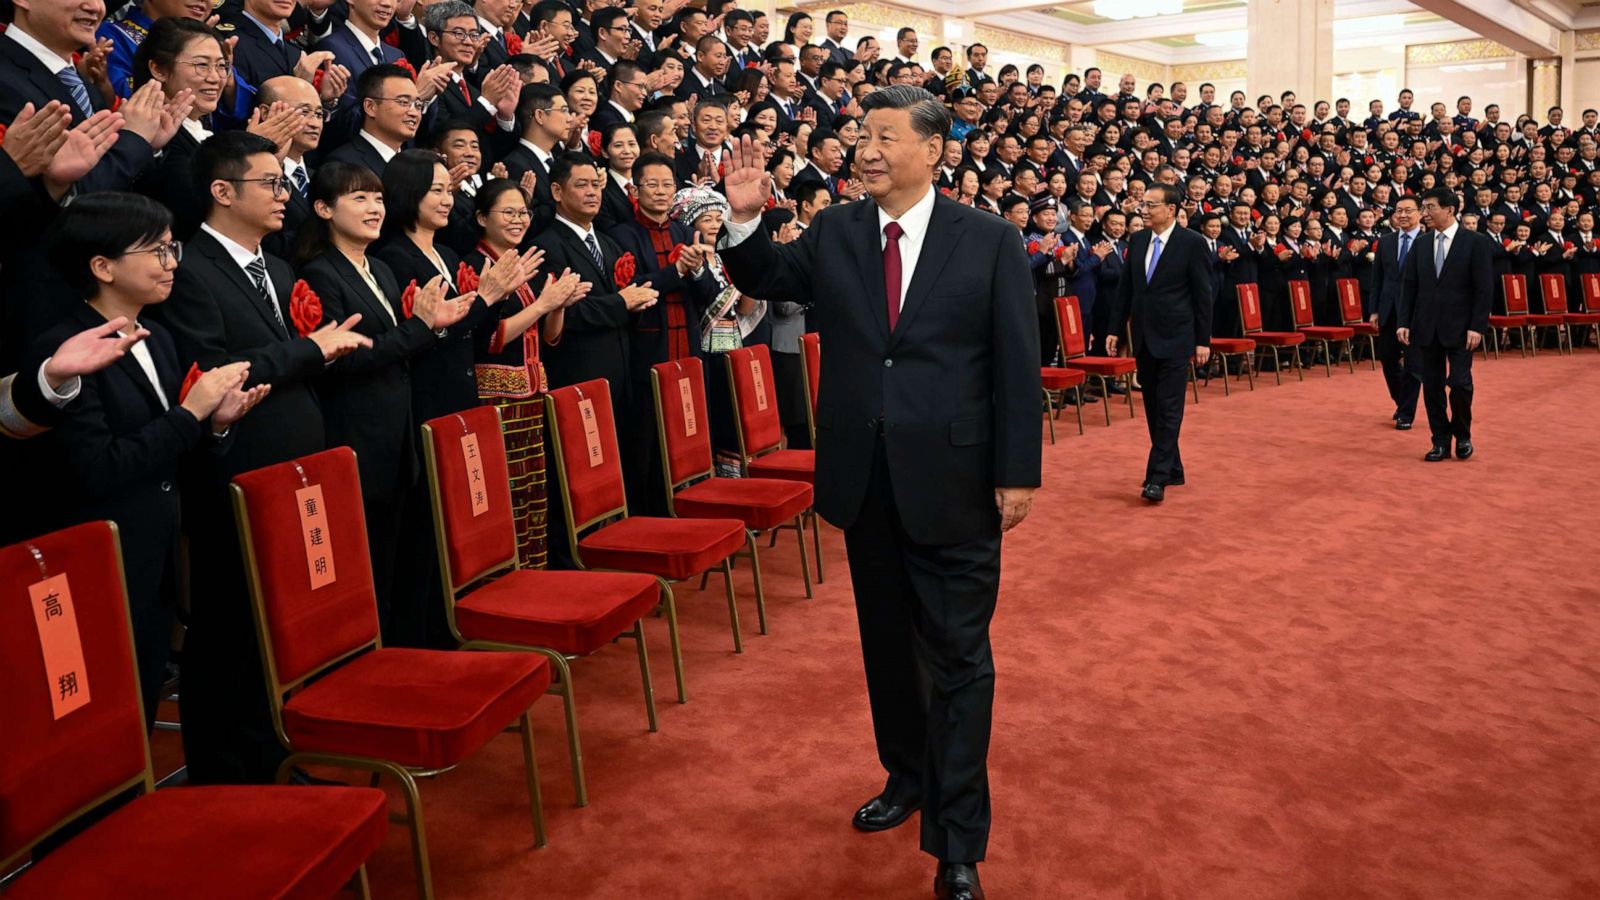 Σι Τζινπίνγκ: Αυτά είναι τα απροσδόκητα μέτρα για τη στήριξη της κινεζικής οικονομίας (πίνακες)